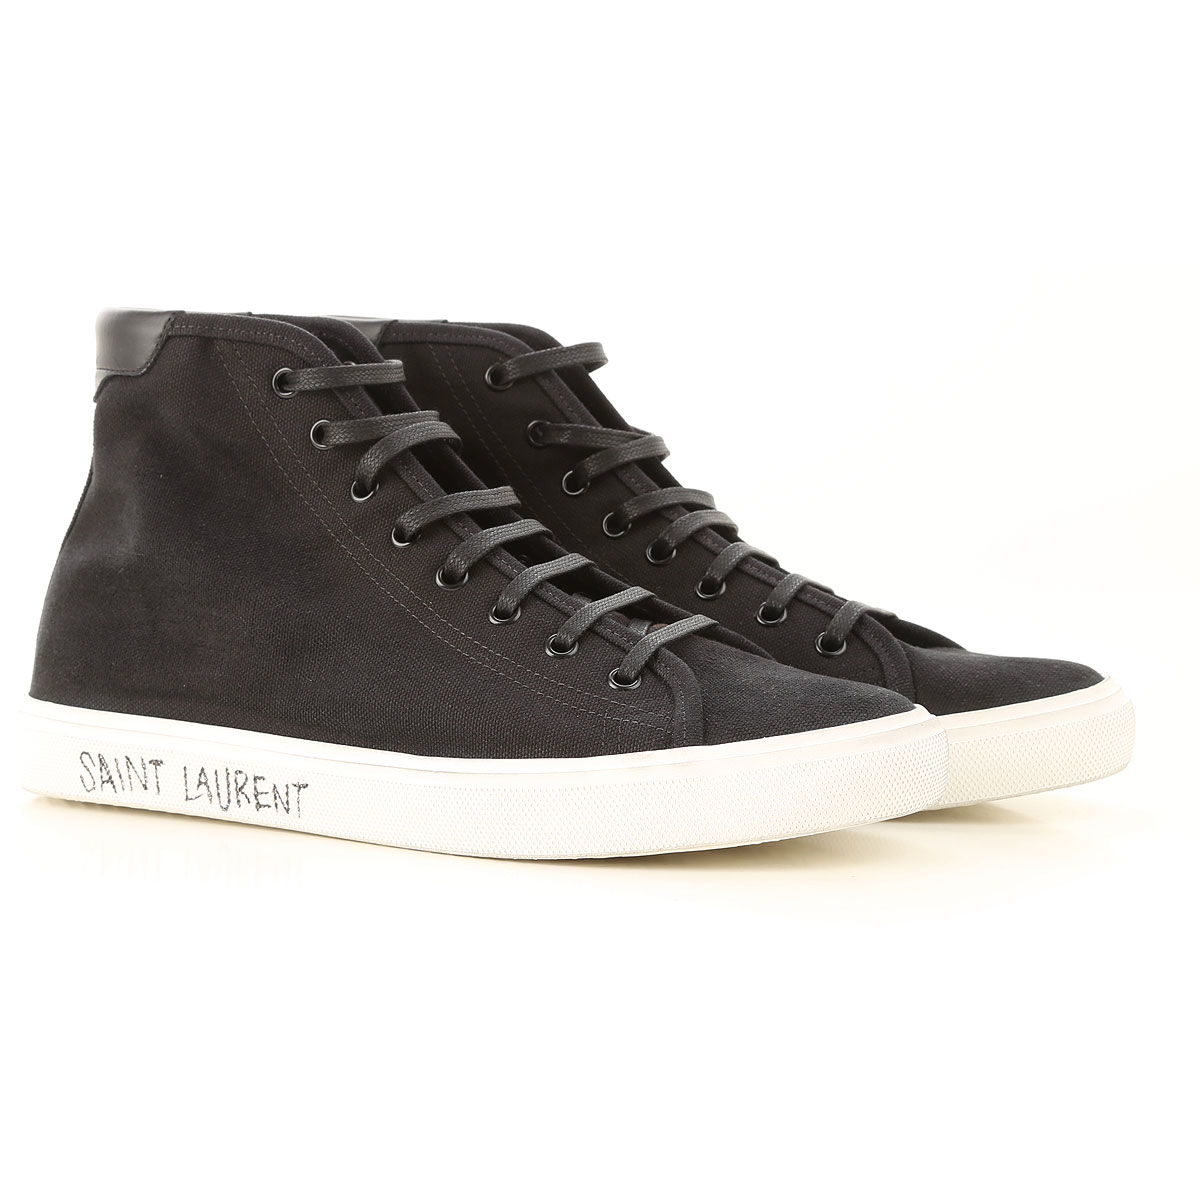 Mens Shoes Saint Laurent, Style code: 606075-guz20-1000